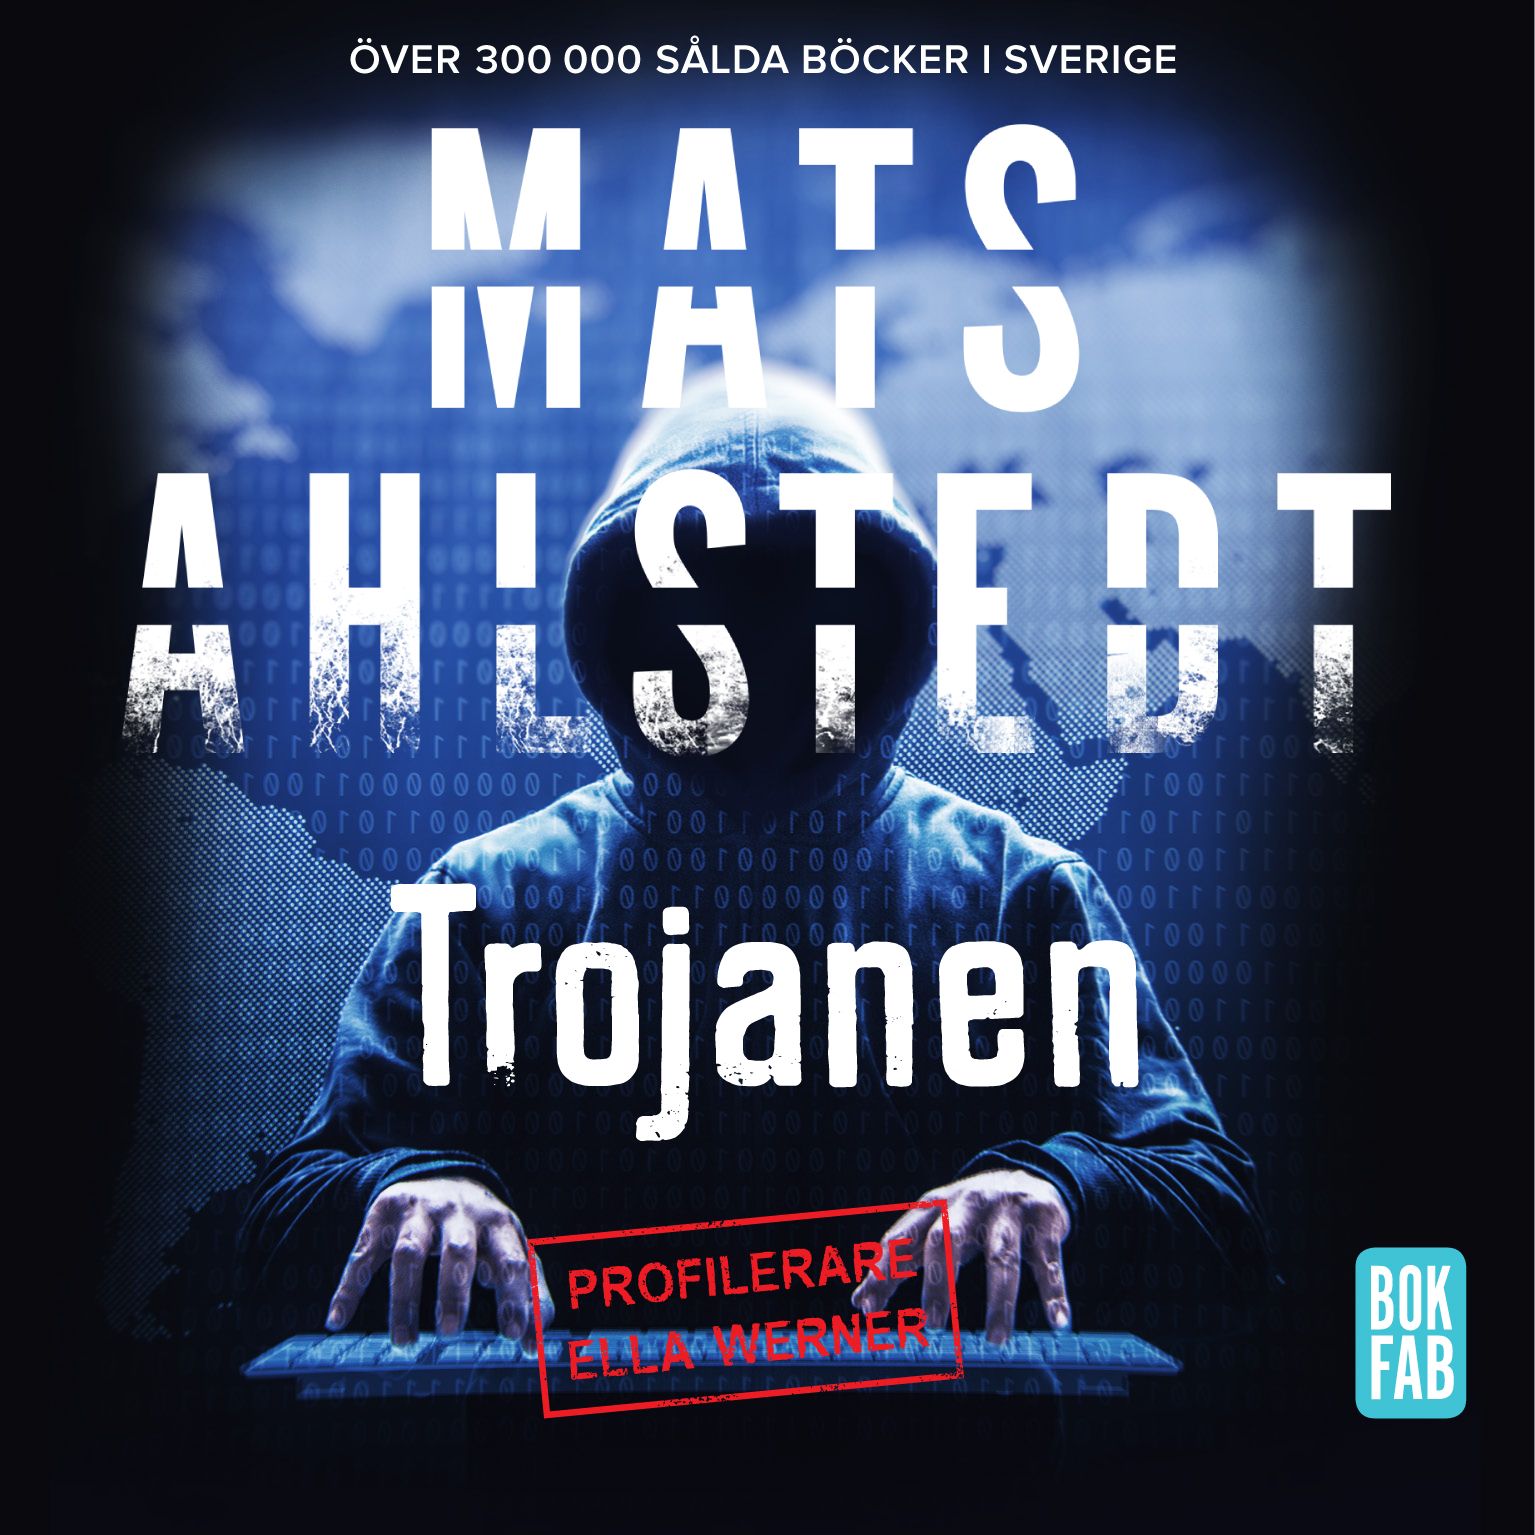 Trojanen, lydbog af Mats Ahlstedt